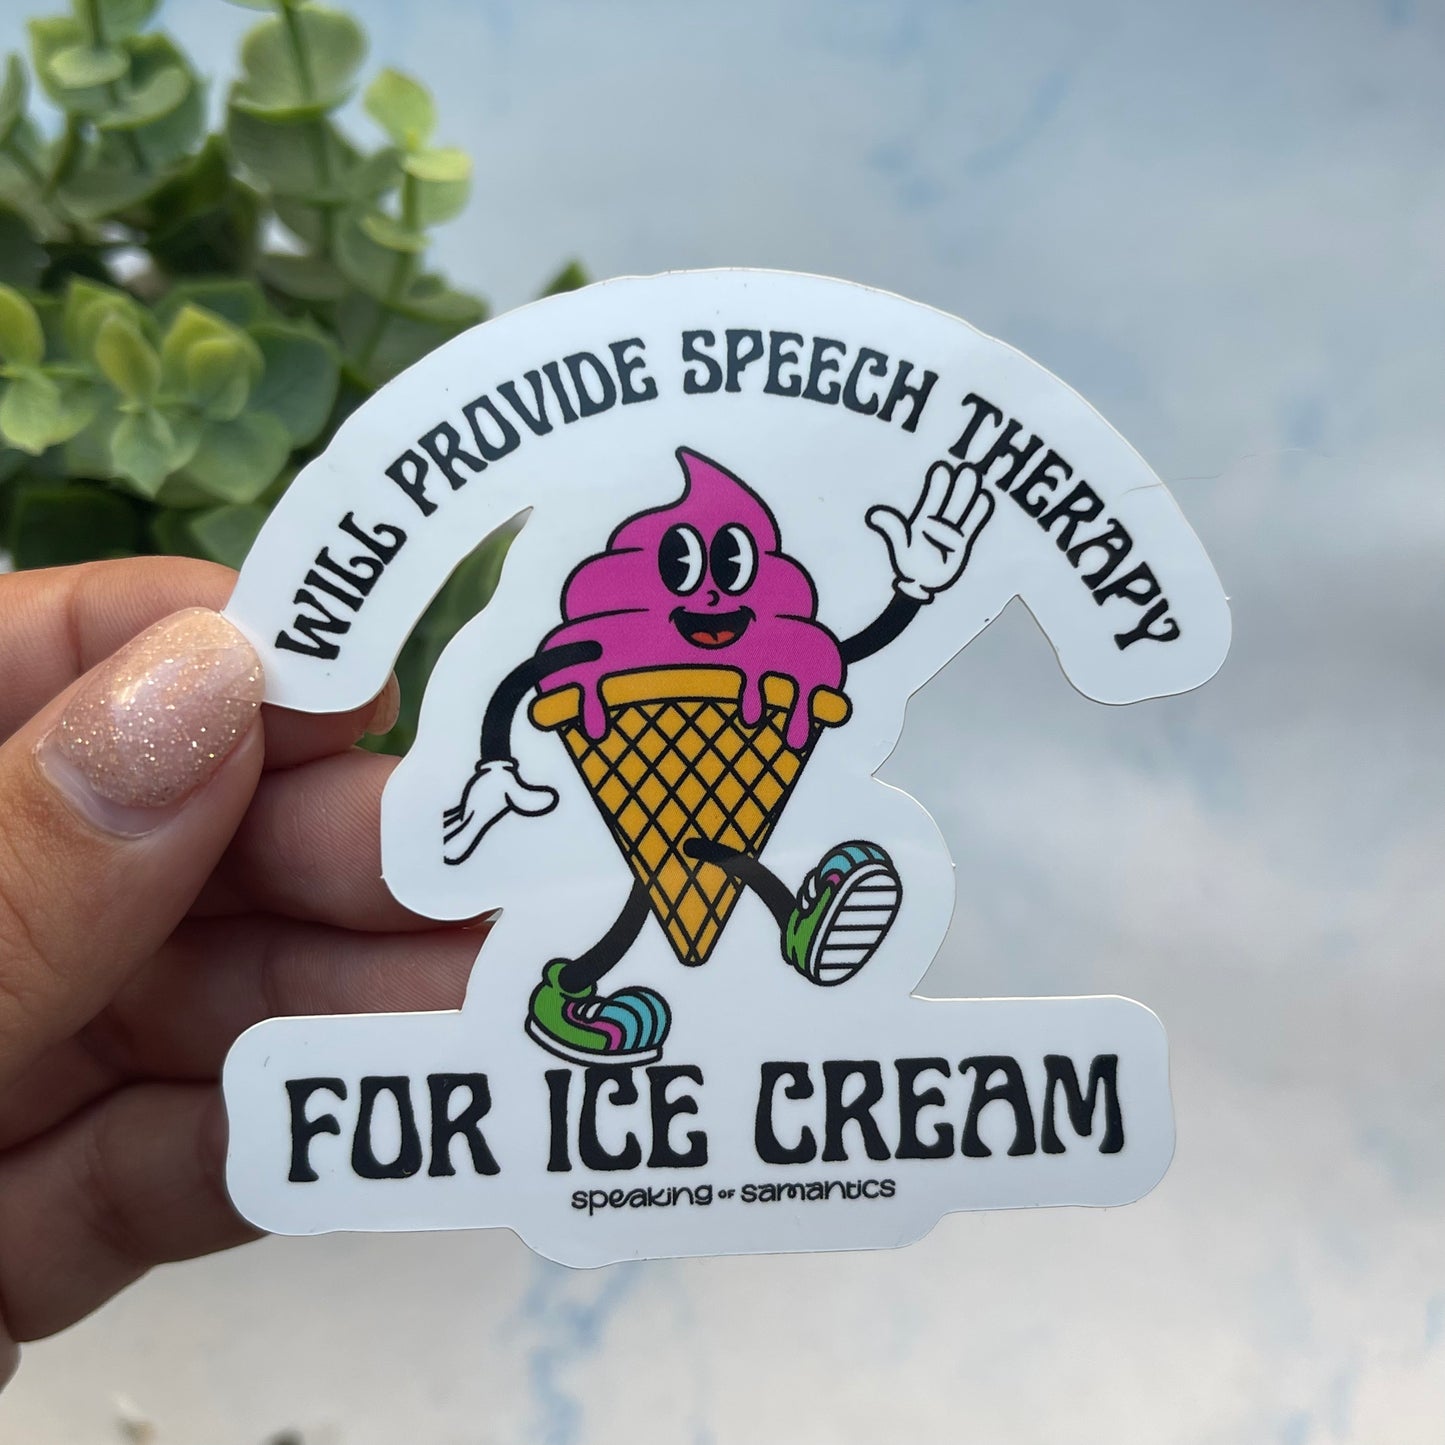 Will Provide Speech Therapy for Ice Cream Sticker